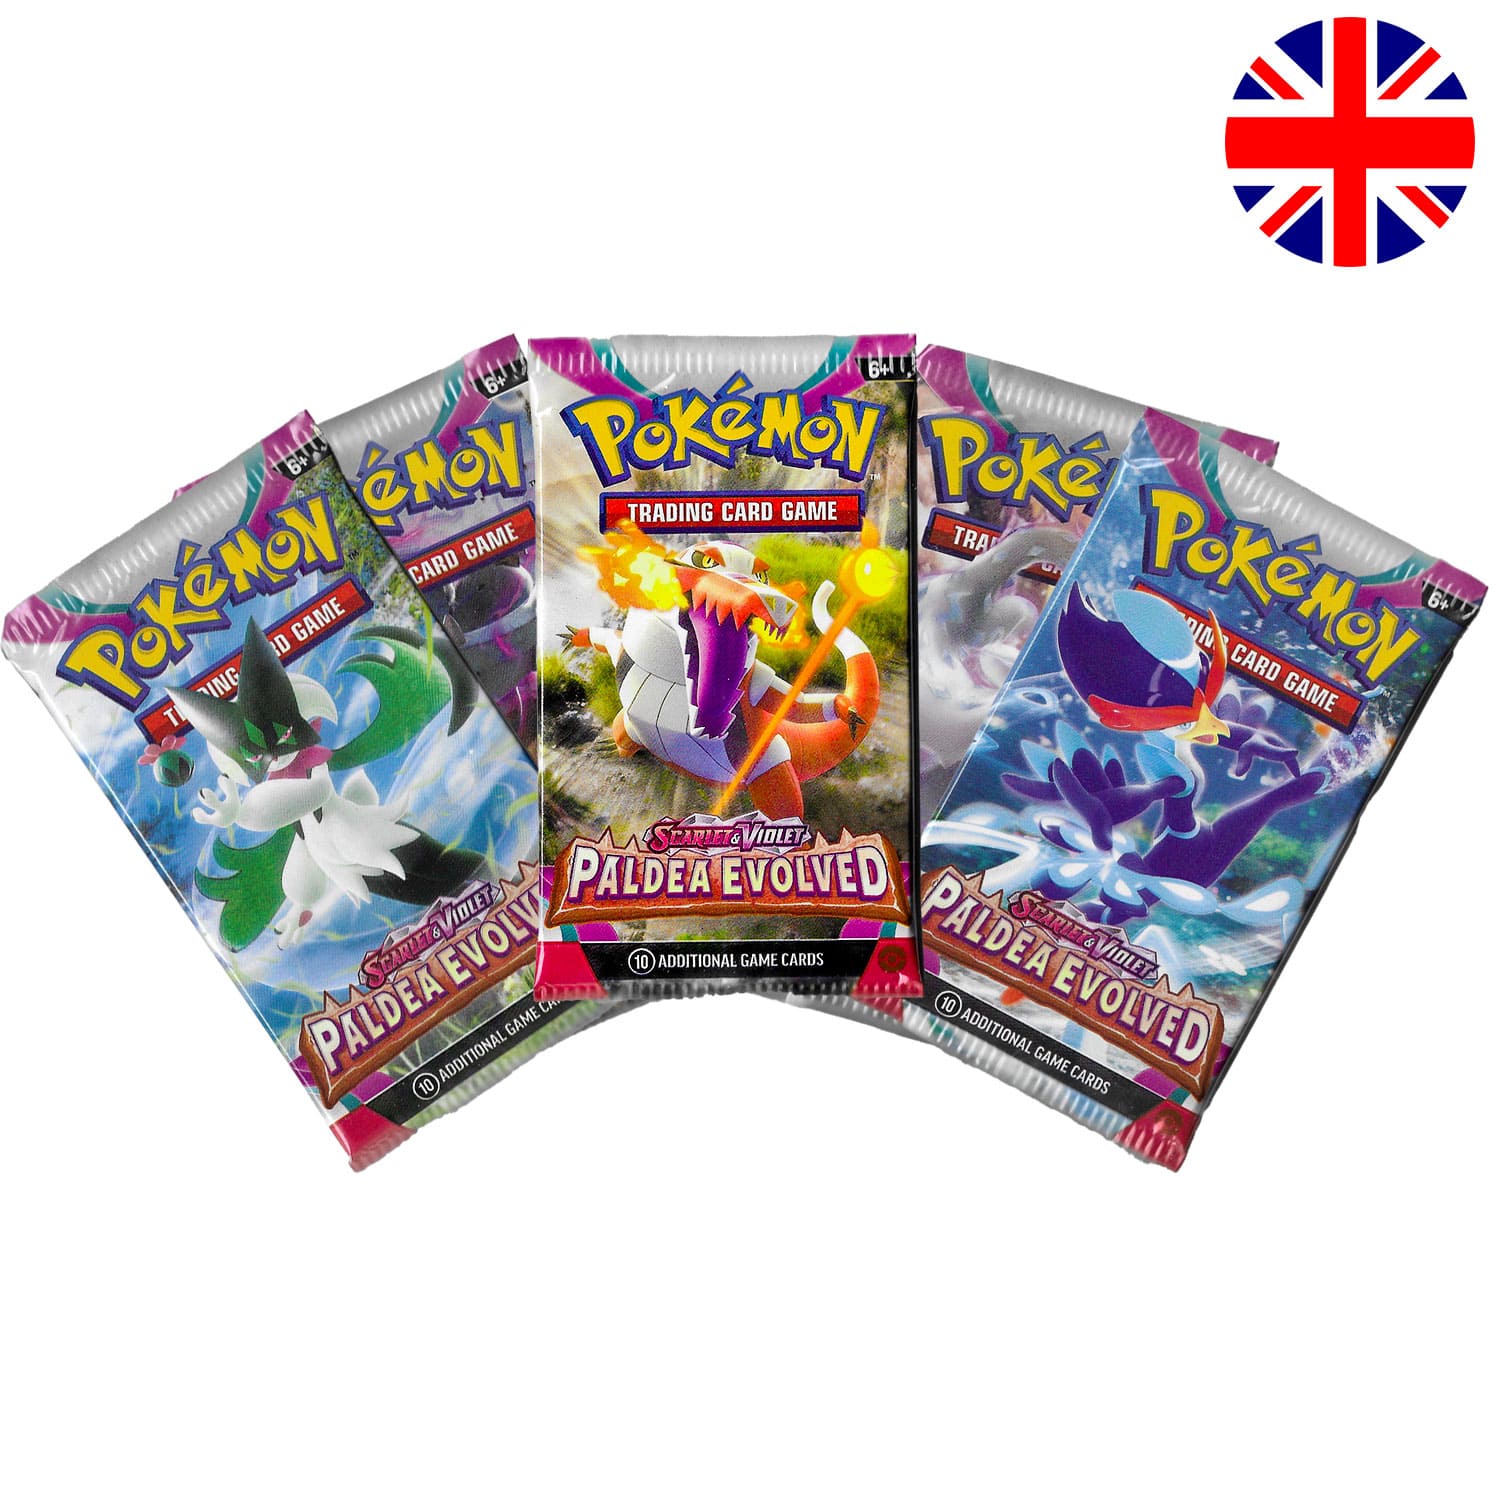 Das Pokemon Boosterpack Paldea Evolved (SV02) als Scan mit allen 4 Artworks und der Flagge Englands in der Ecke.